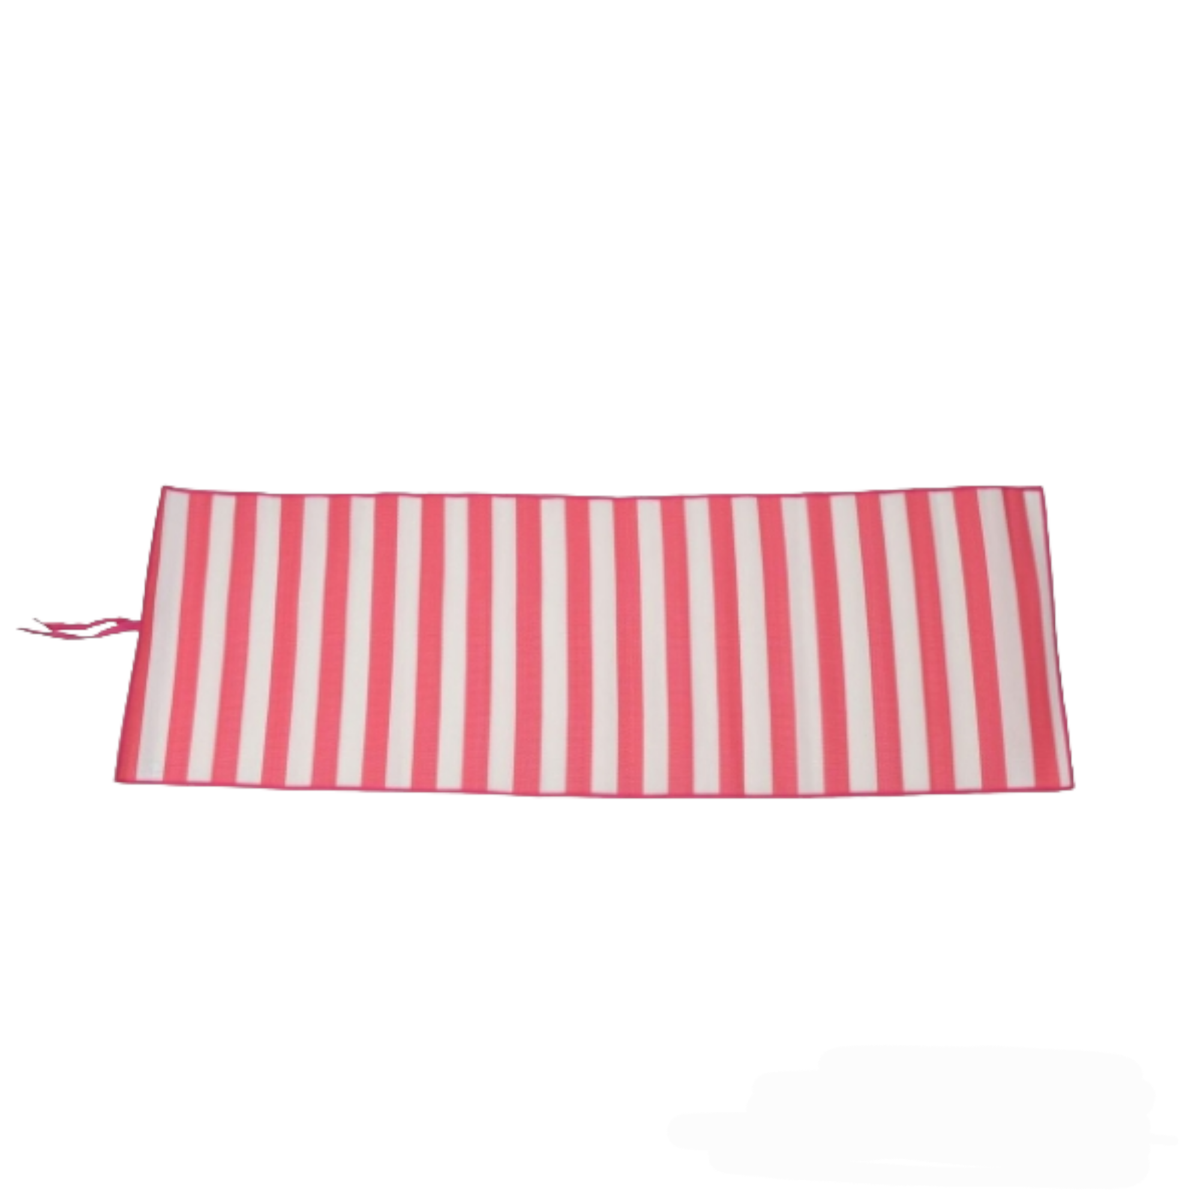 Woven striped Outdoor Beach / Picnic Mat